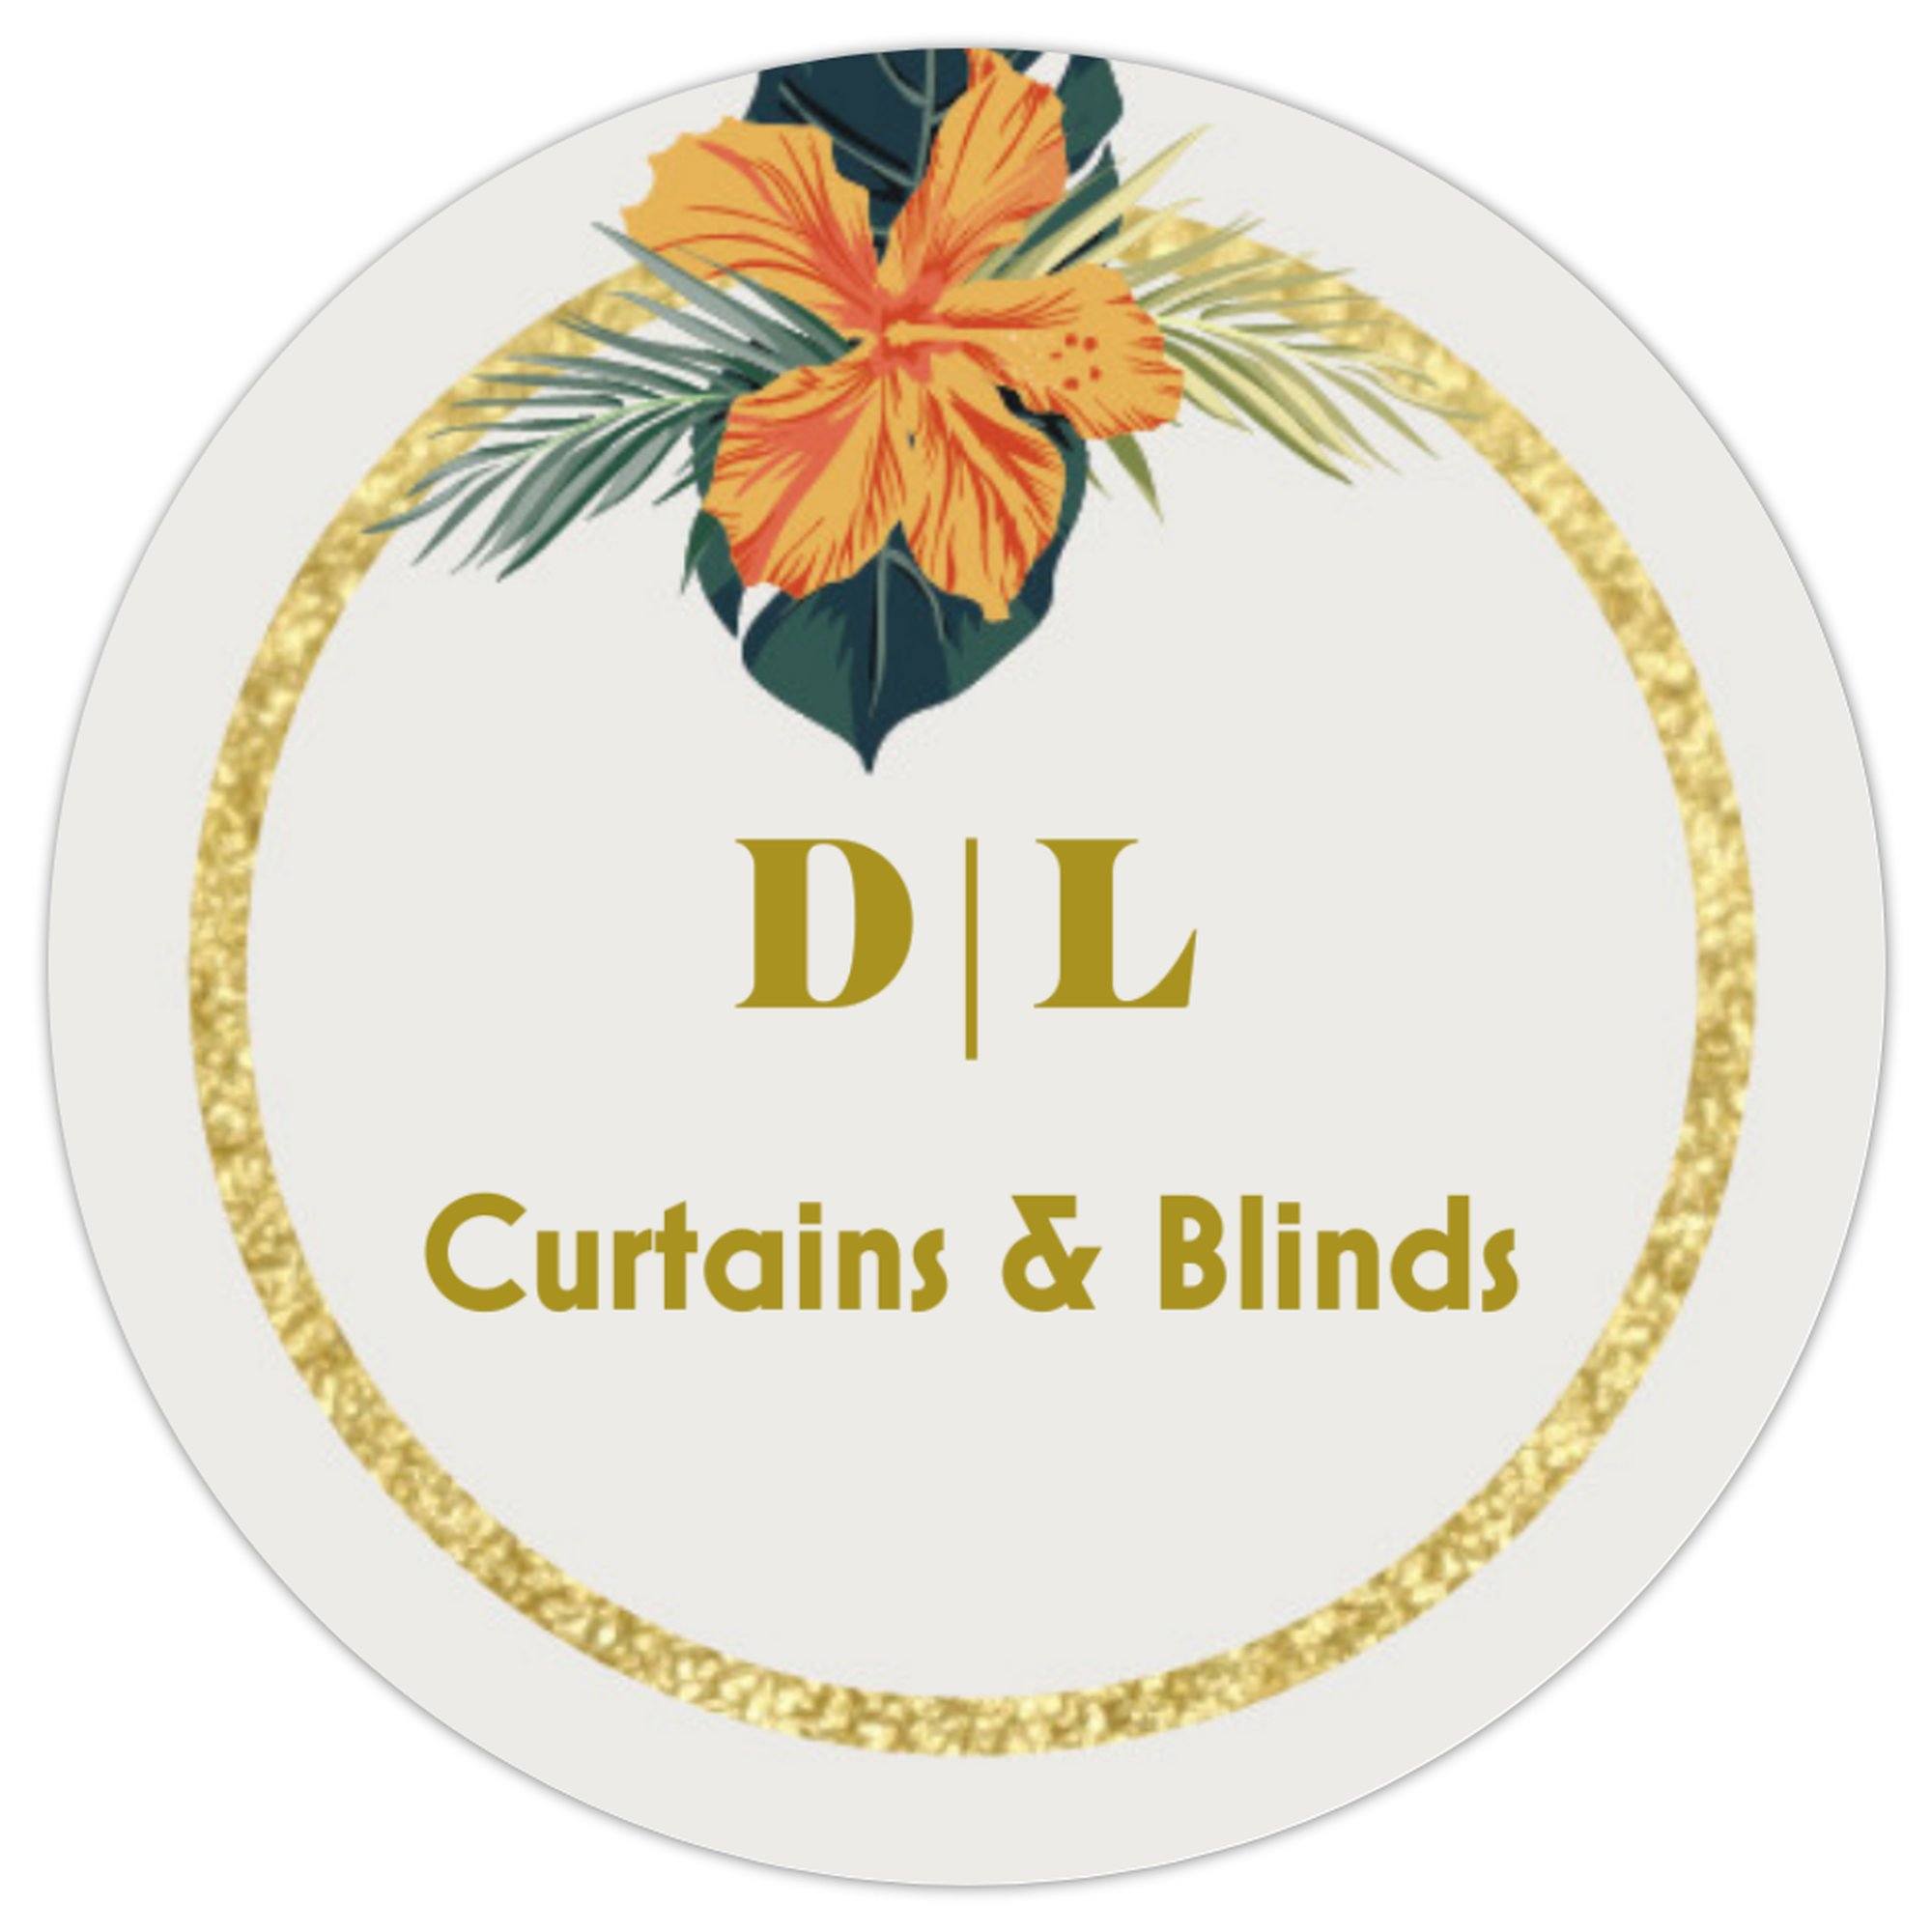 D|L Curtains & Blinds